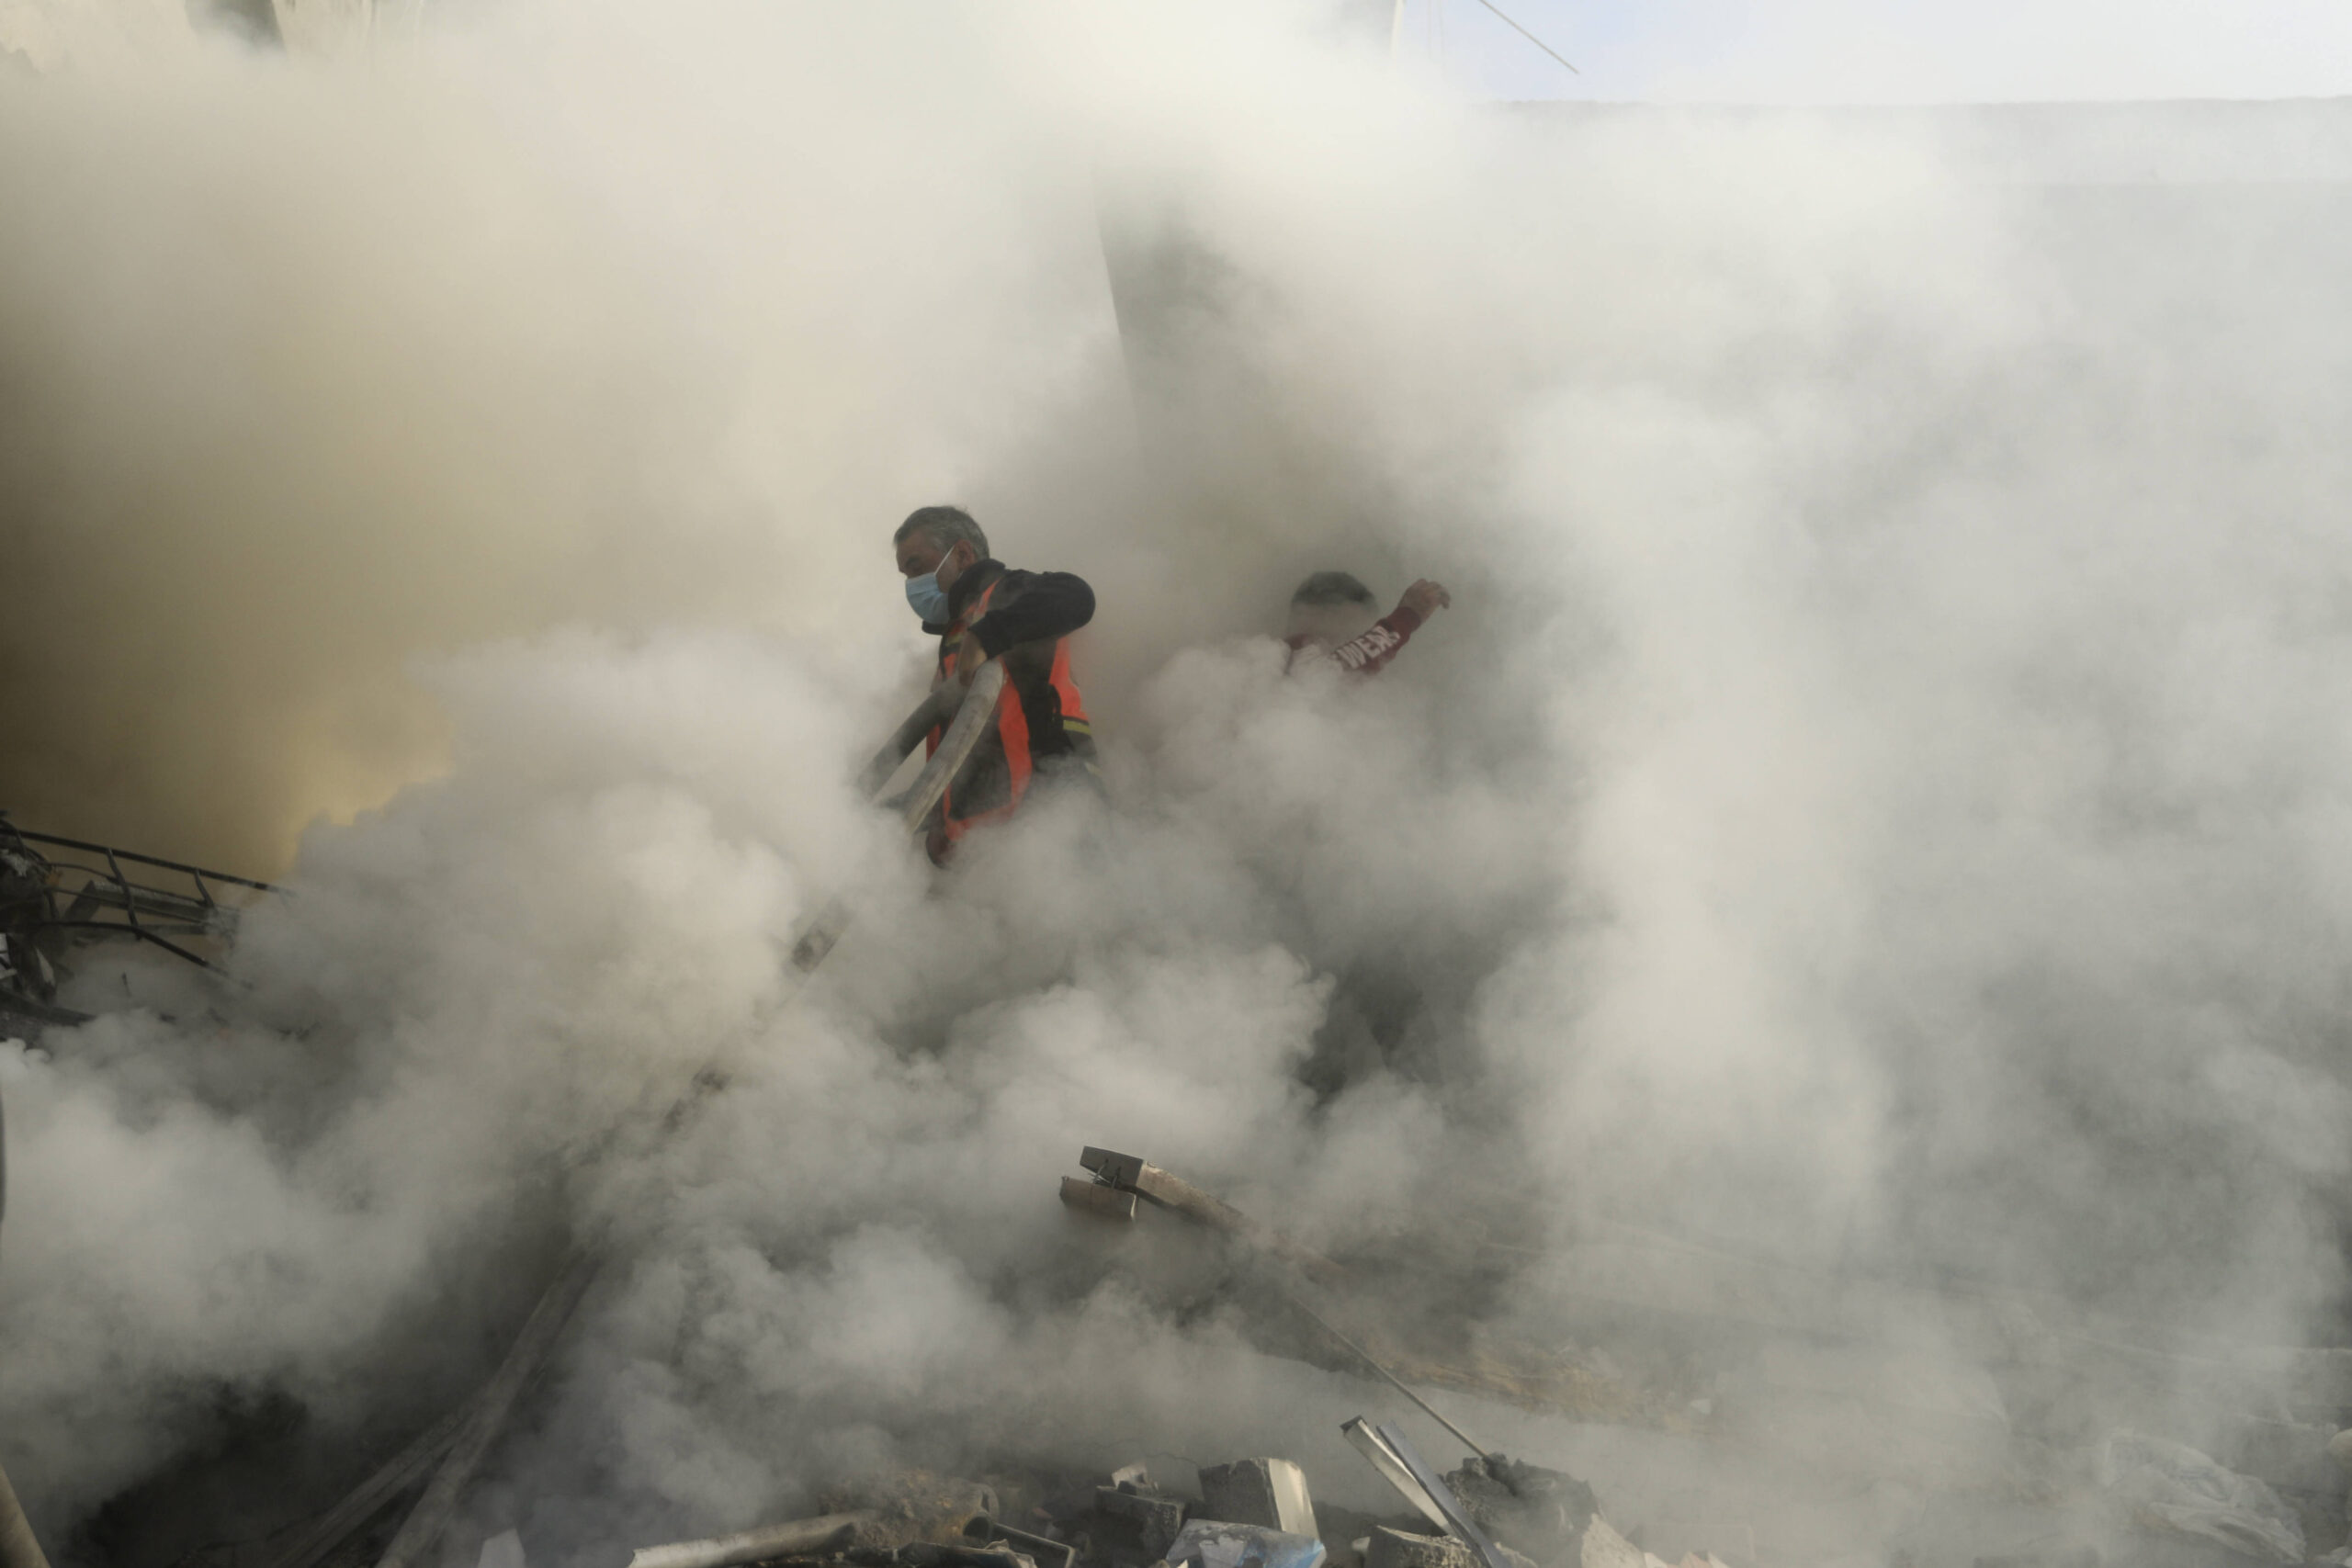 Des pompiers palestiniens éteignent un incendie causé par une frappe aérienne israélienne dans le camp de réfugiés de Khan Younis, dans le sud de la bande de Gaza, mardi 7 novembre. © AP Photo/Mohammed Dahman